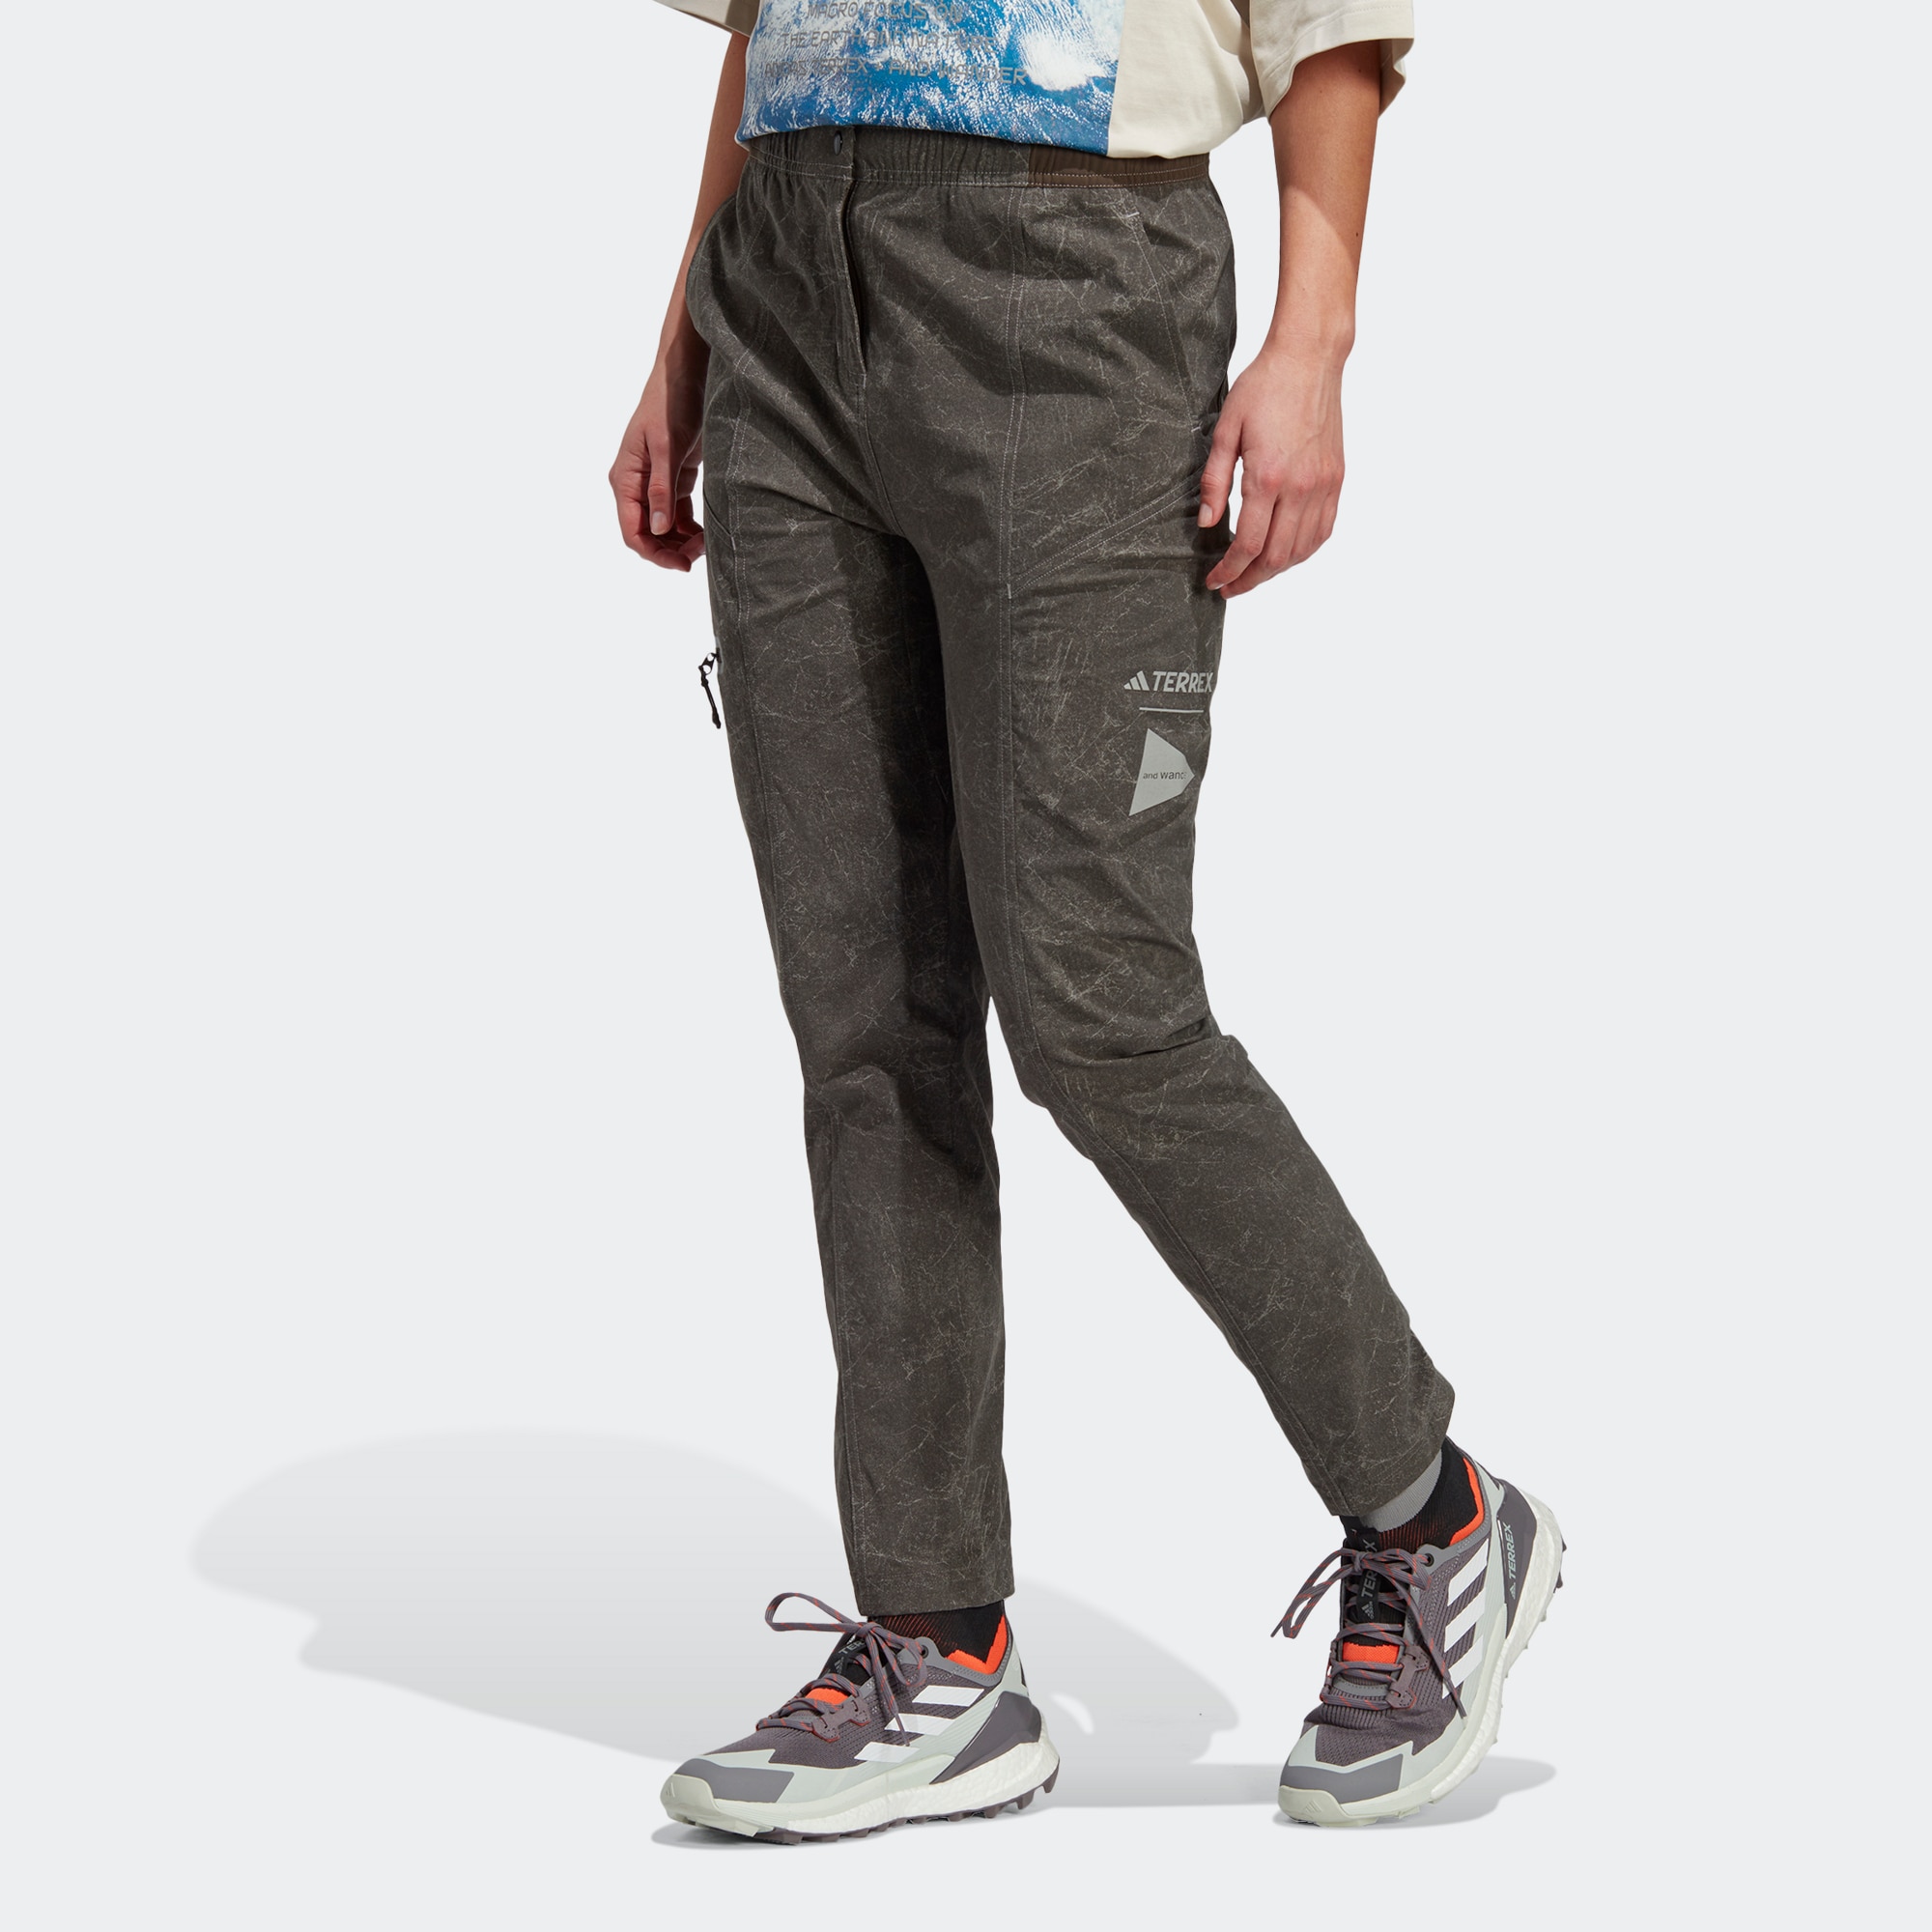 Мужские брюки для спорта — купить в интернет-магазине Ламода